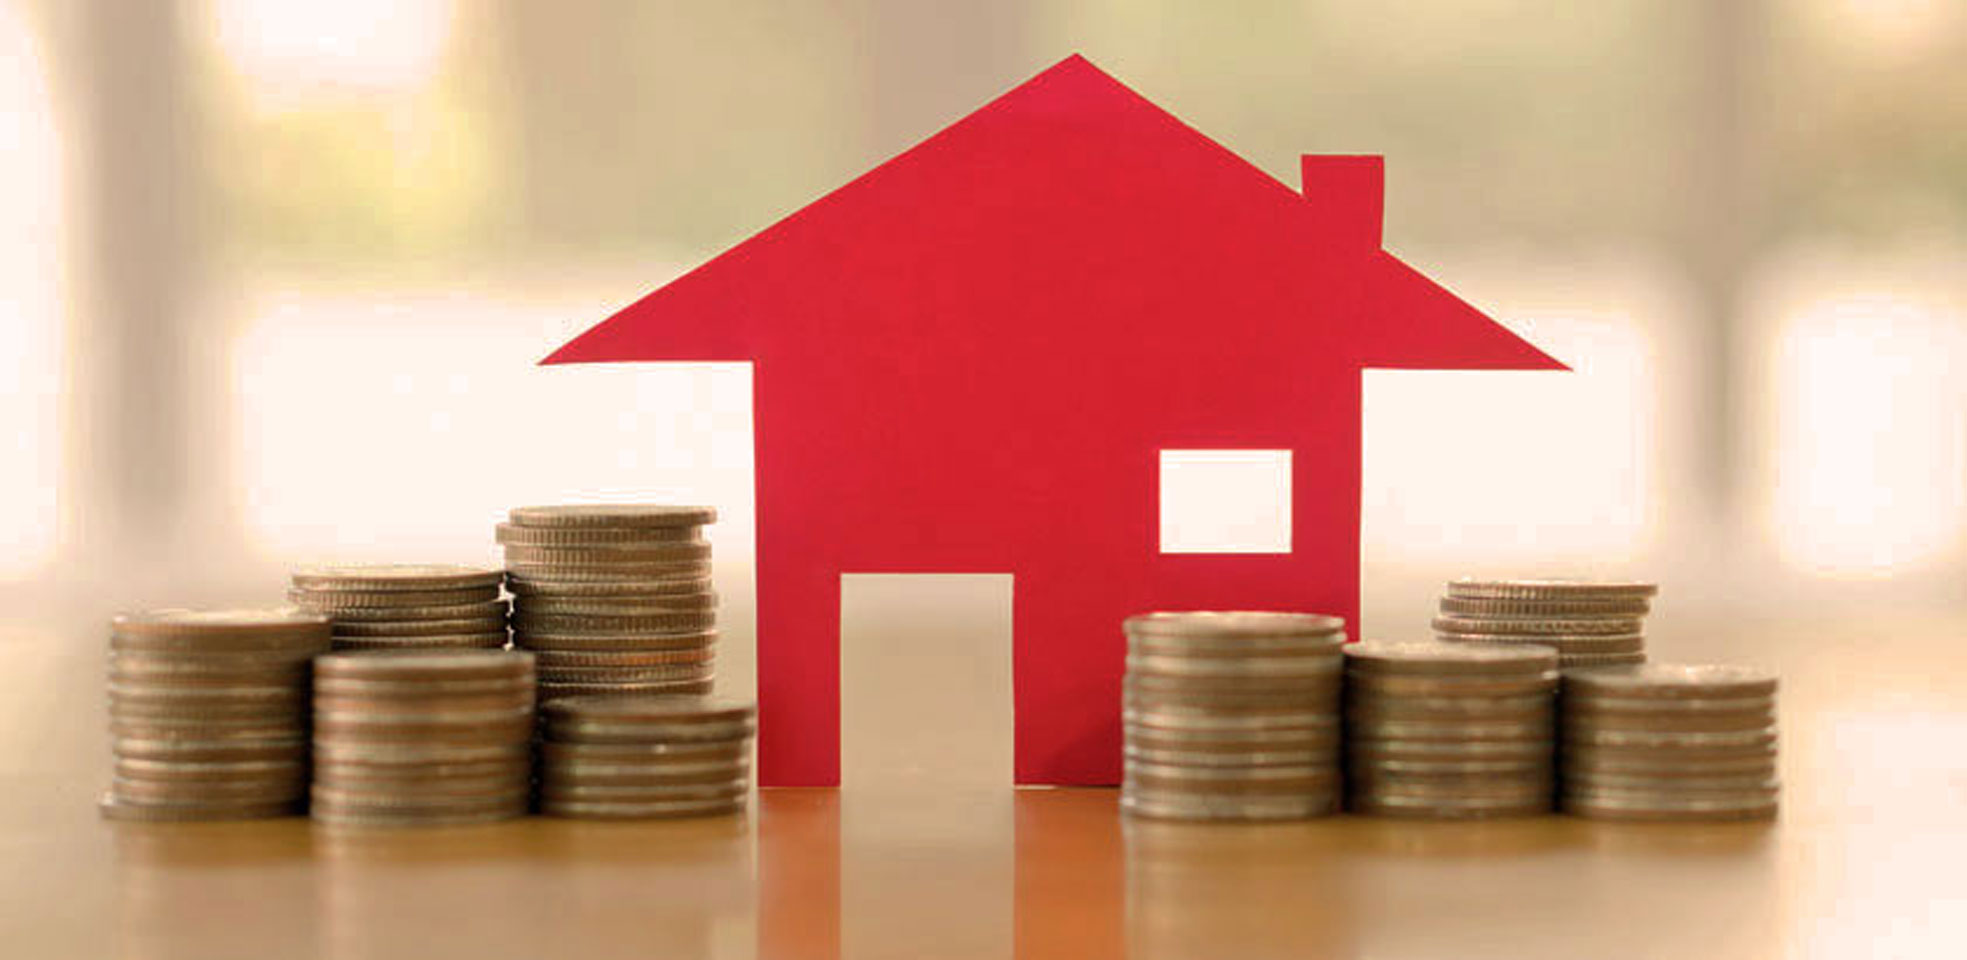 Assurance maison : quels sont les critères à regarder dans une assurance habitation ?